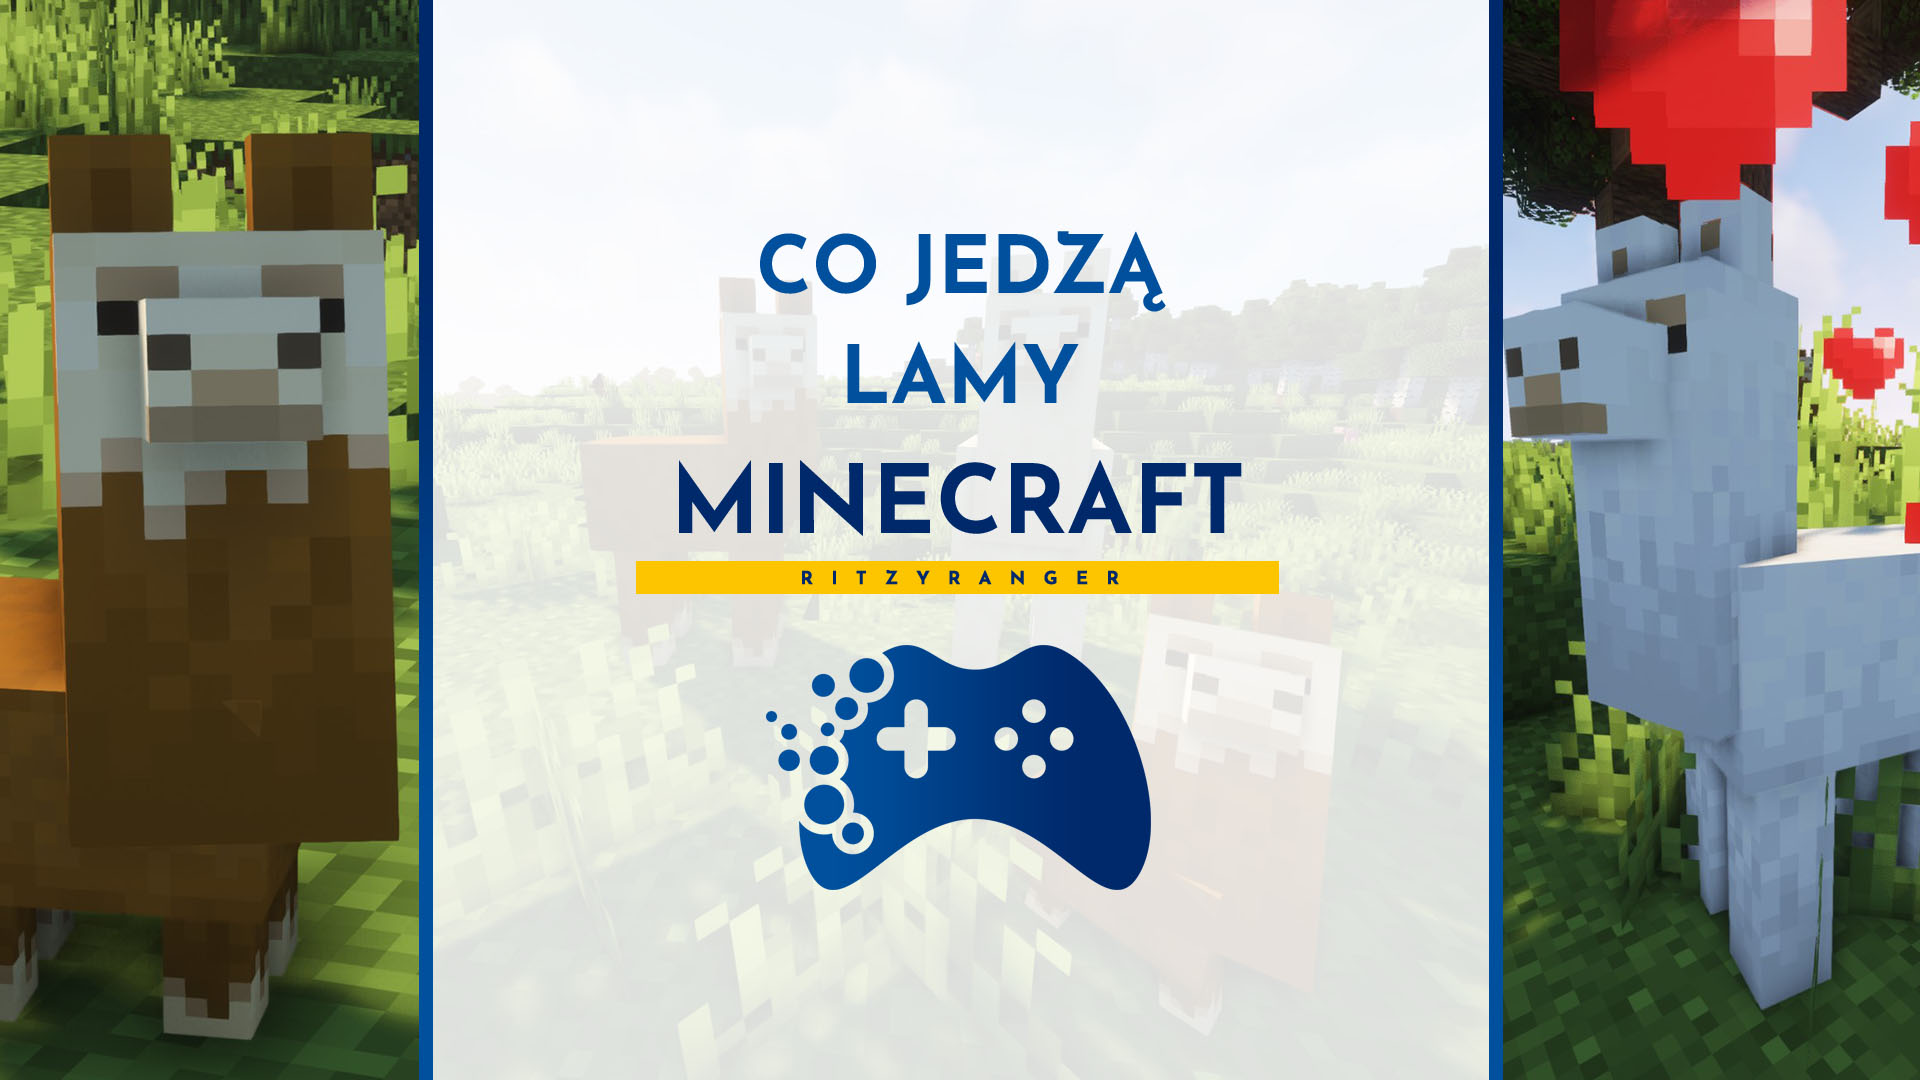 Lamy Minecraft - co jedz膮?